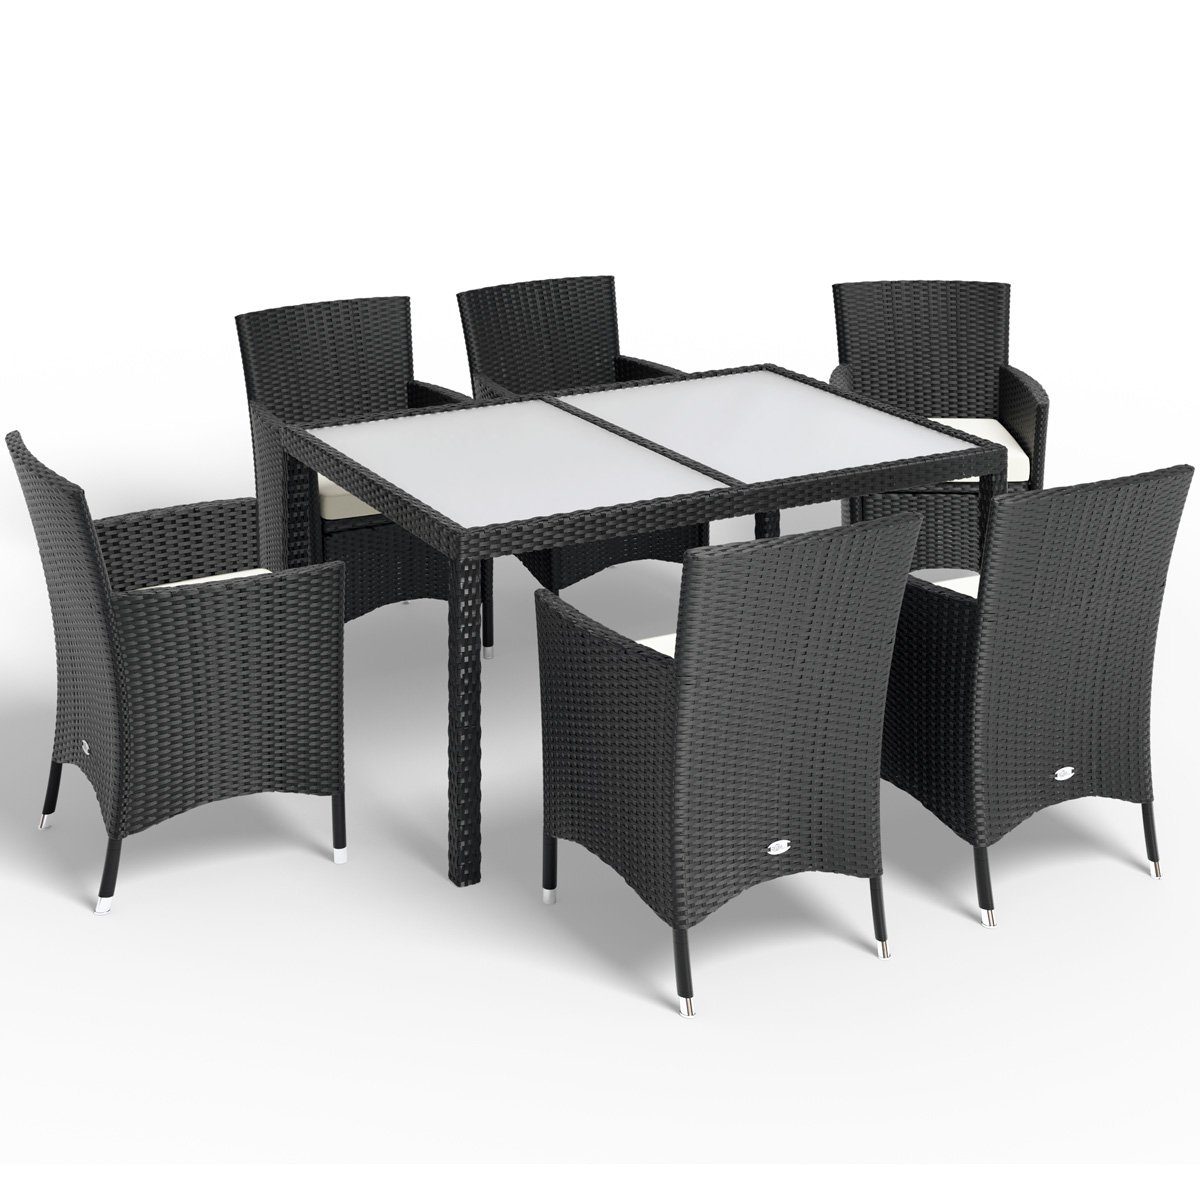 Stühle Polyrattan 7cm Auflagen Casaria Mailand, 150x90cm Gartentisch Sitzgruppe 6 stapelbare